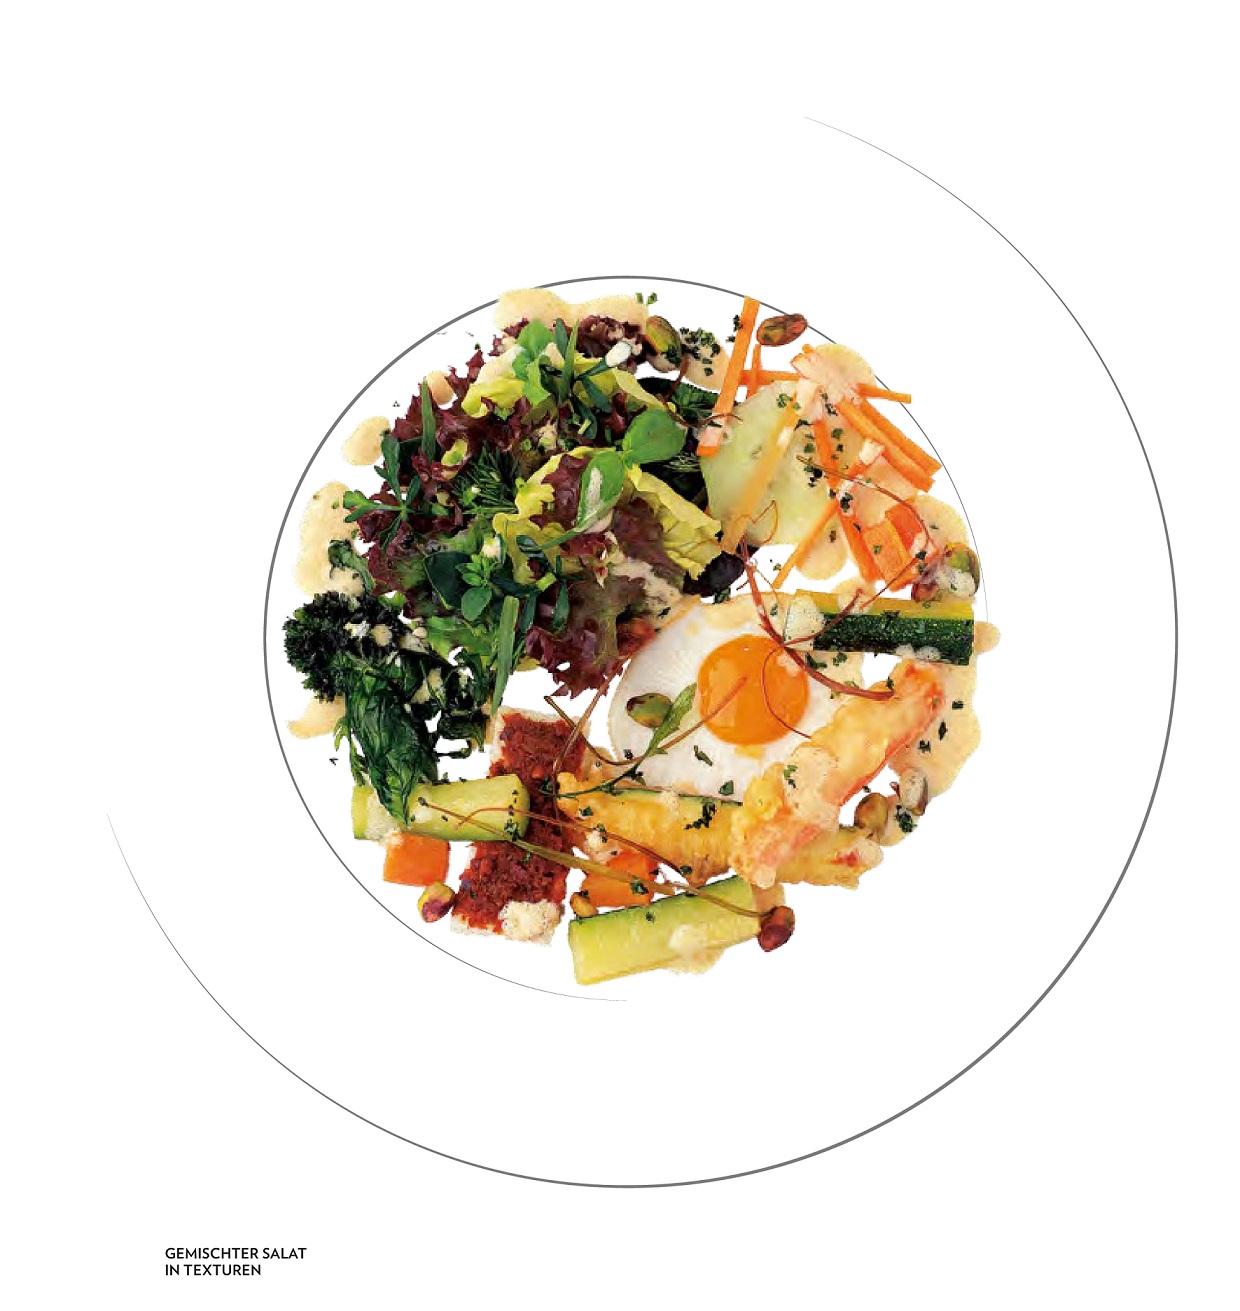 Gemischter Salat mit Texturen (Bild- und Rezeptquelle: Jürgen Dollase, Geschmacksschule, Foto: Peter Schulte für Tre Torri Verlag)